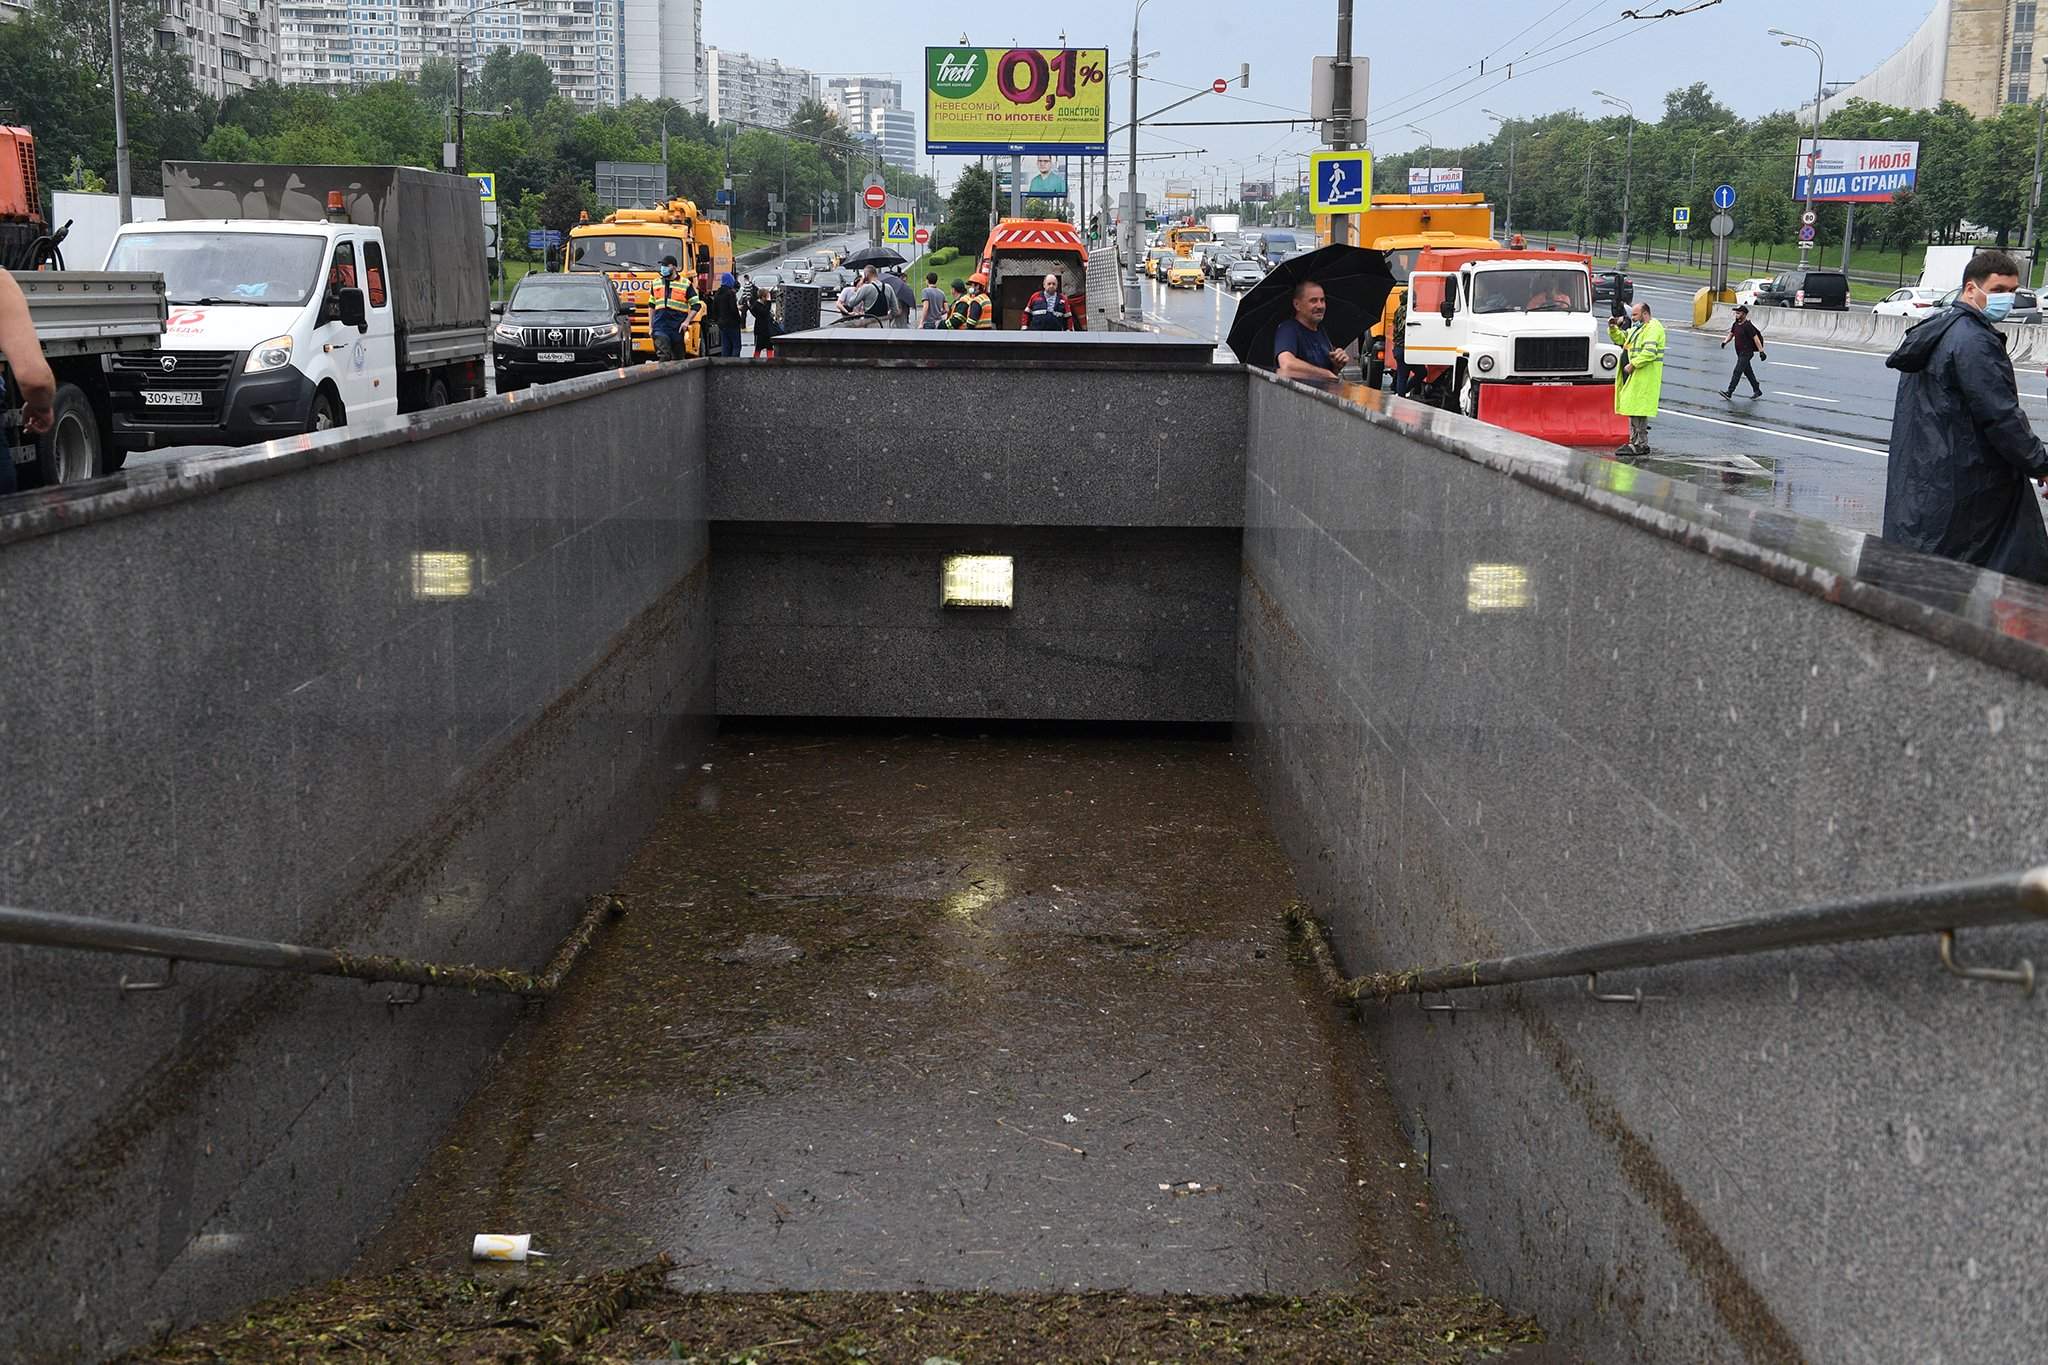 28 июня 20. 20.06.2020 Варшавское шоссе Москва затопило. Потоп в Москве 20 июня 2020. Наводнение в Москве 2020. Затопило Варшавское шоссе.